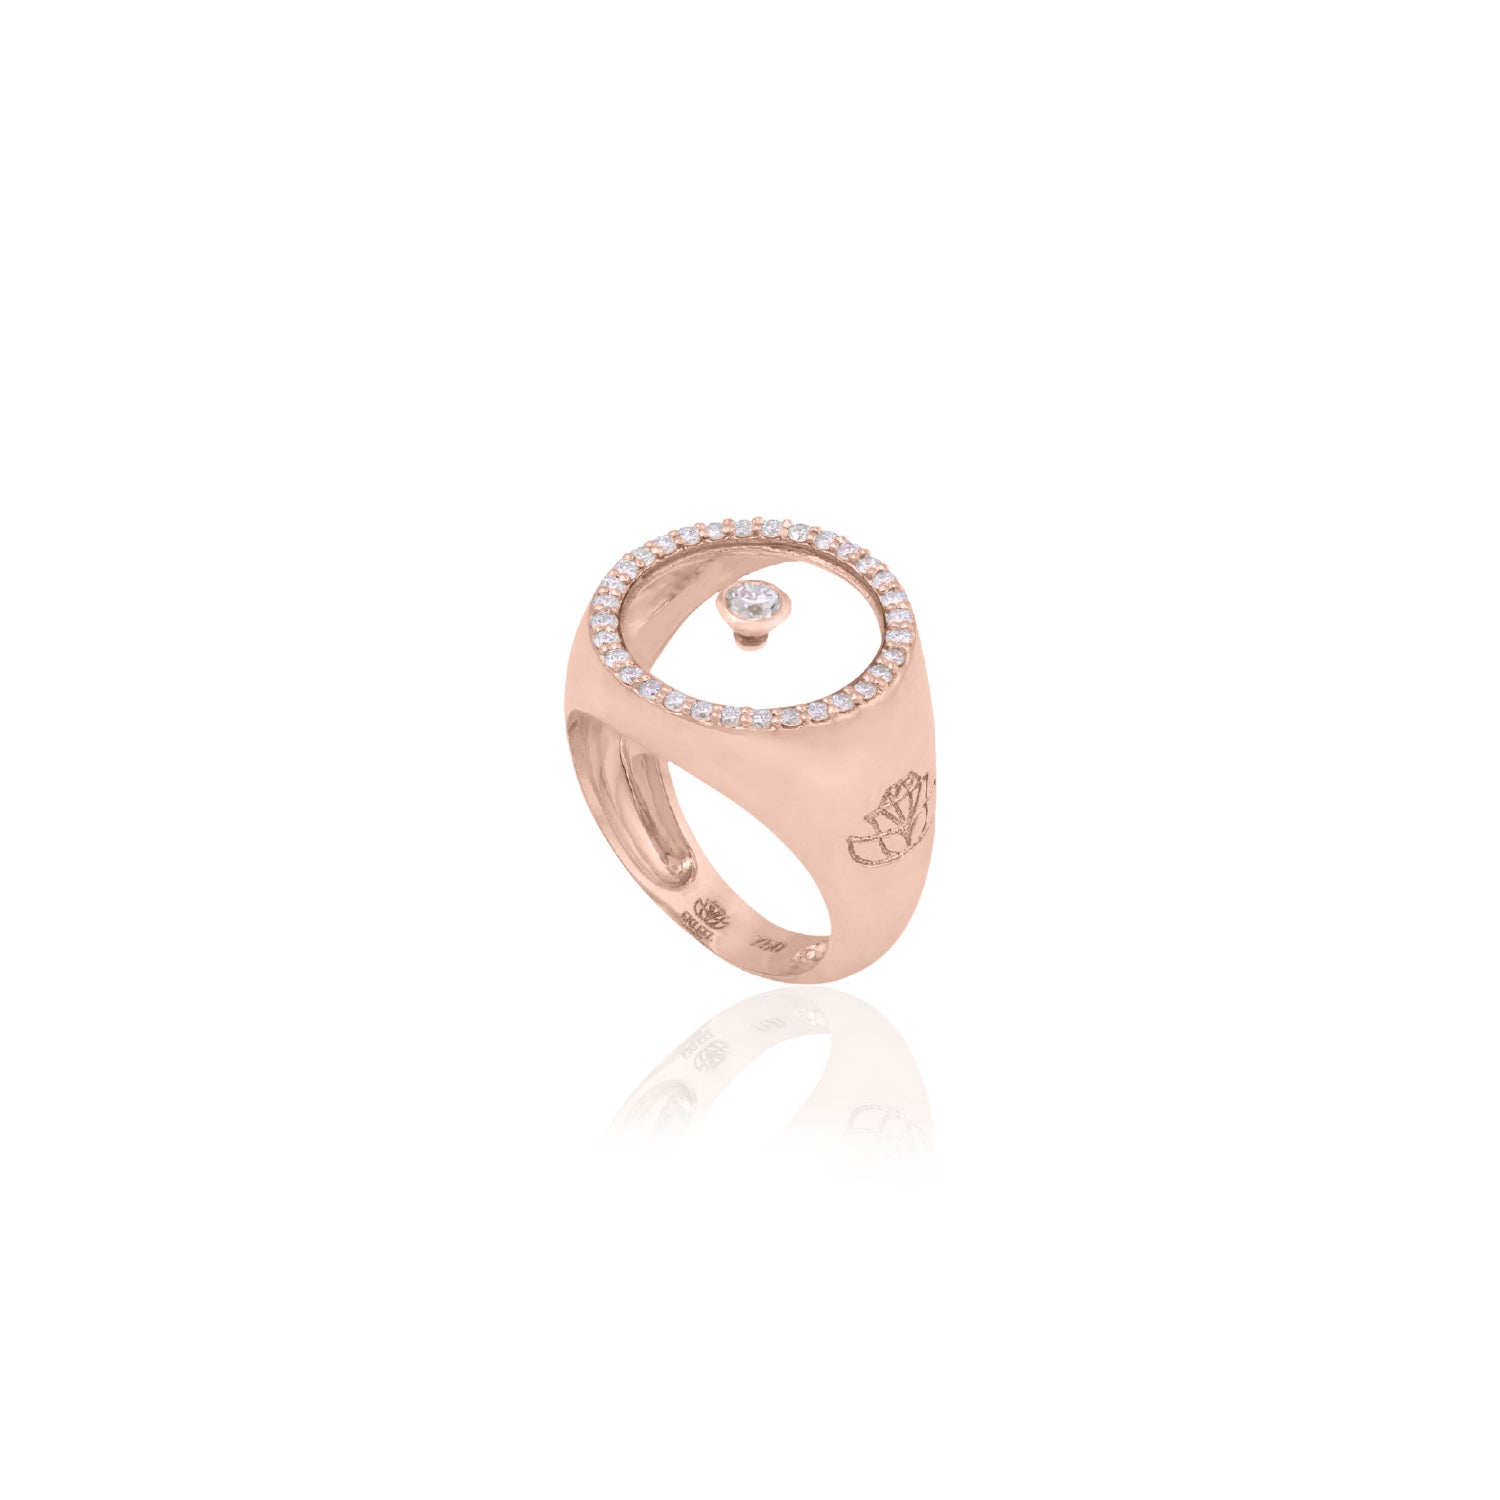 Diamond April Birthstone Ring in Rose Gold